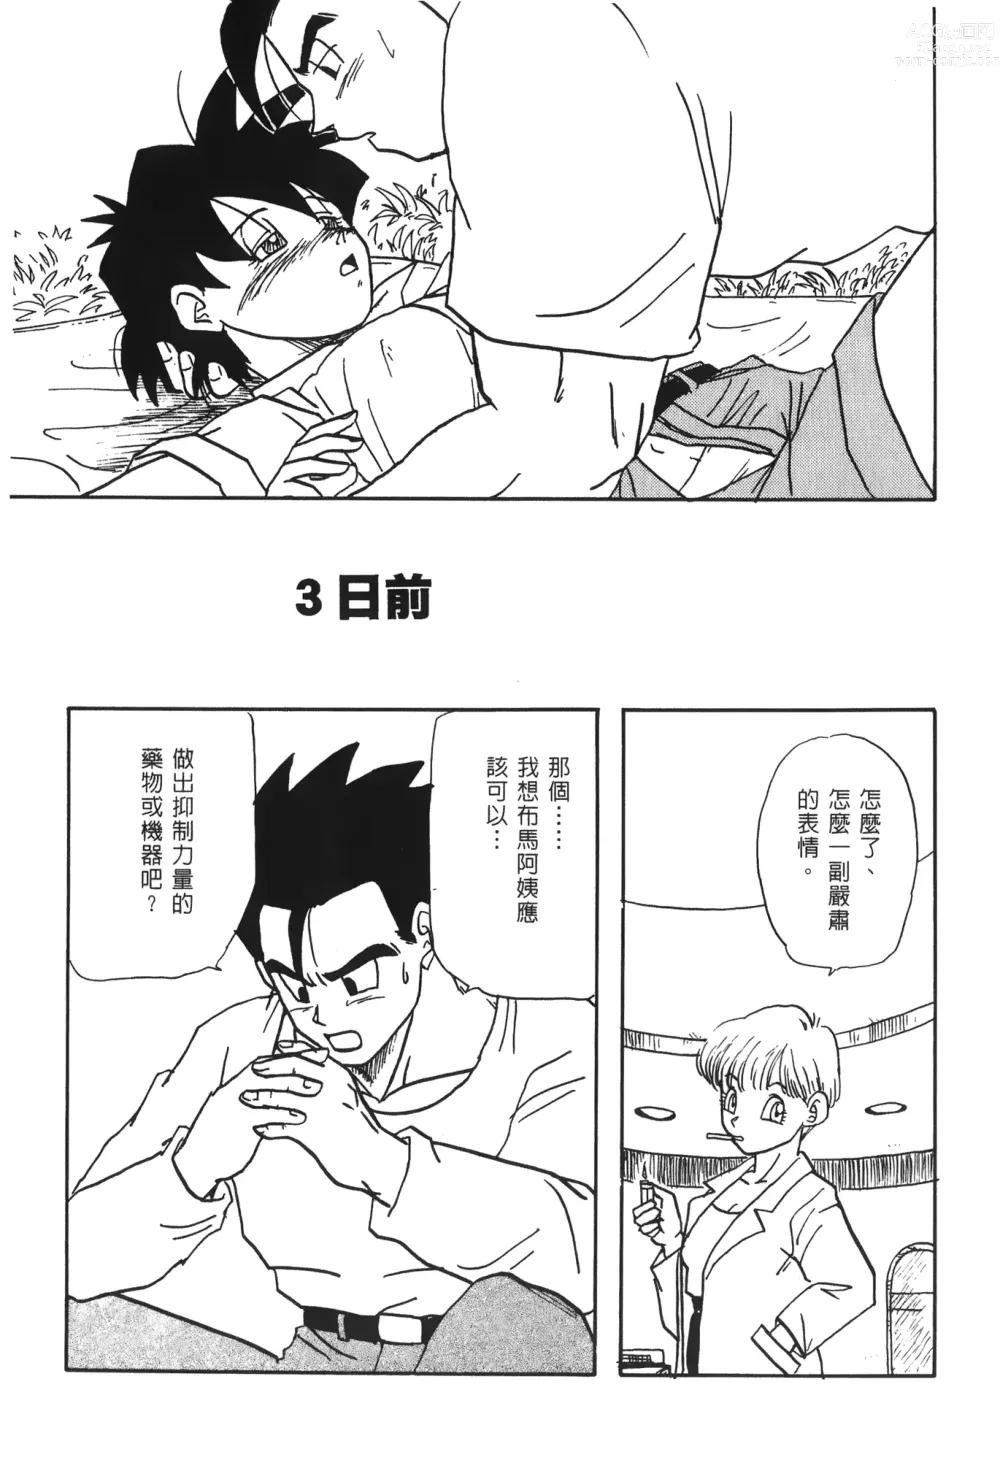 Page 24 of doujinshi ドラゴンパール 03